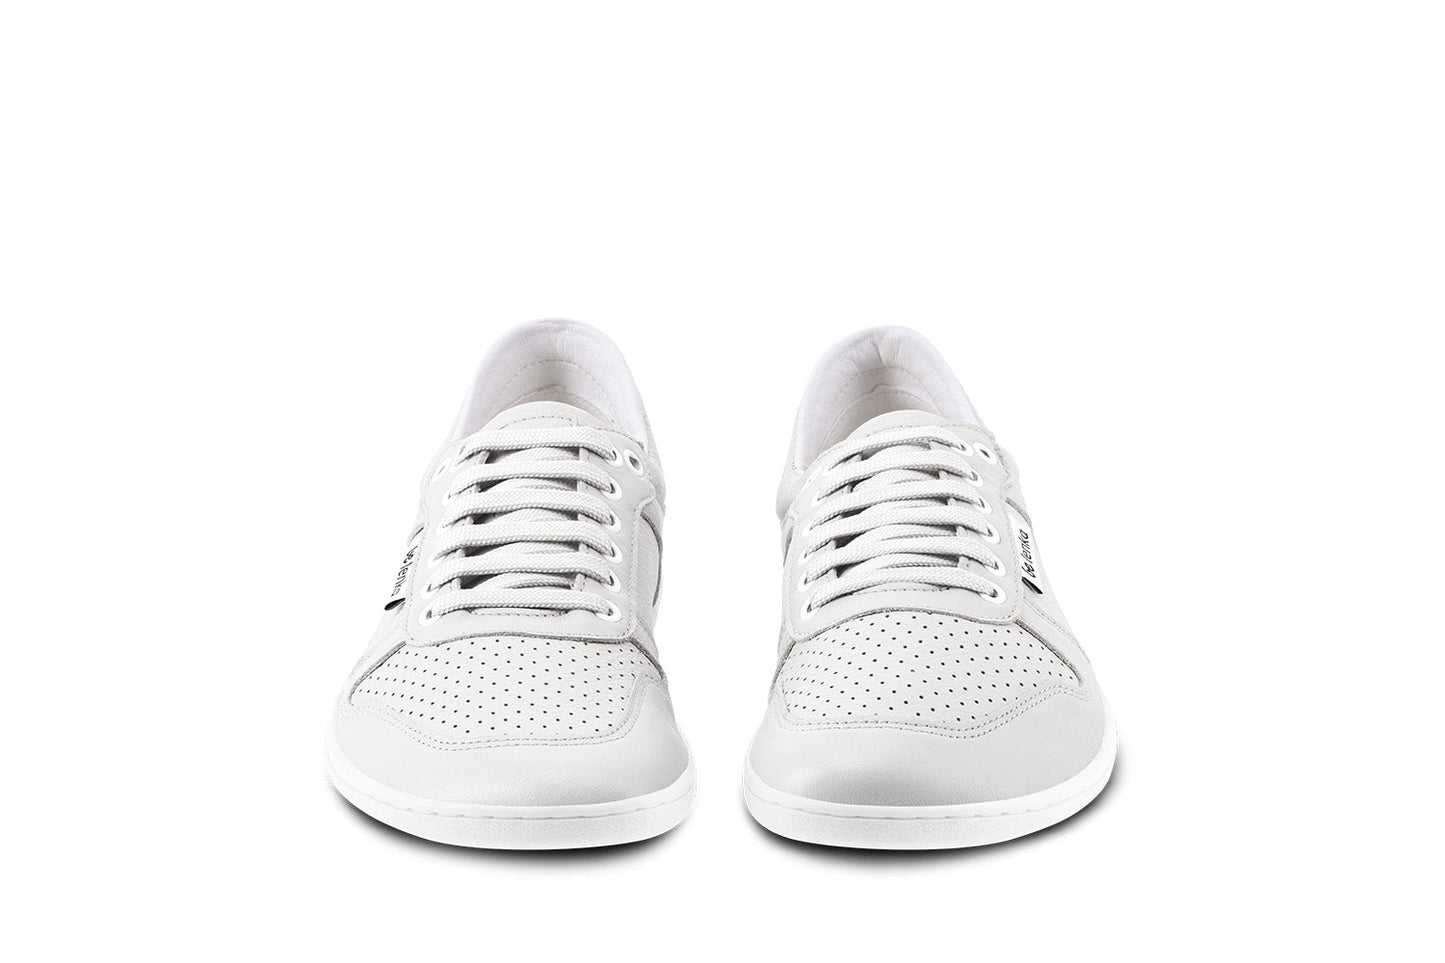 Barefoot Sneakers - Be Lenka Champ 3.0 - All White